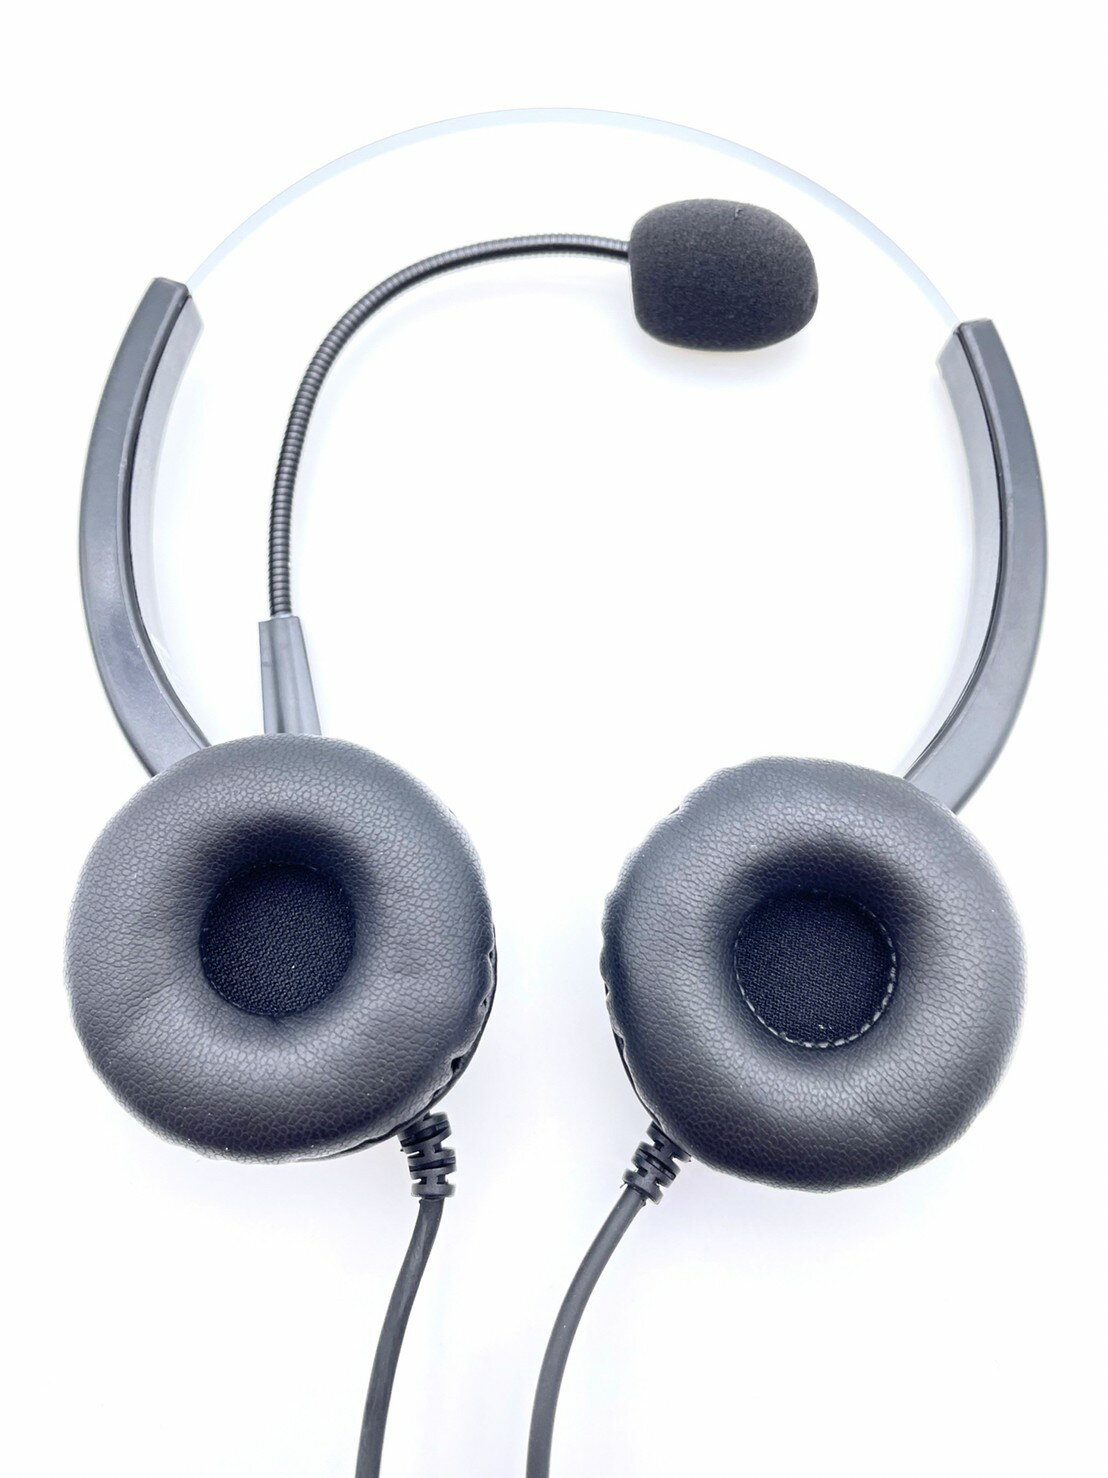 傳康電話耳機 TRANSTEL DK6-12DH DK6-8 DK6-36D 電銷專用電話耳機推薦 雙耳+調音靜音功能1200元